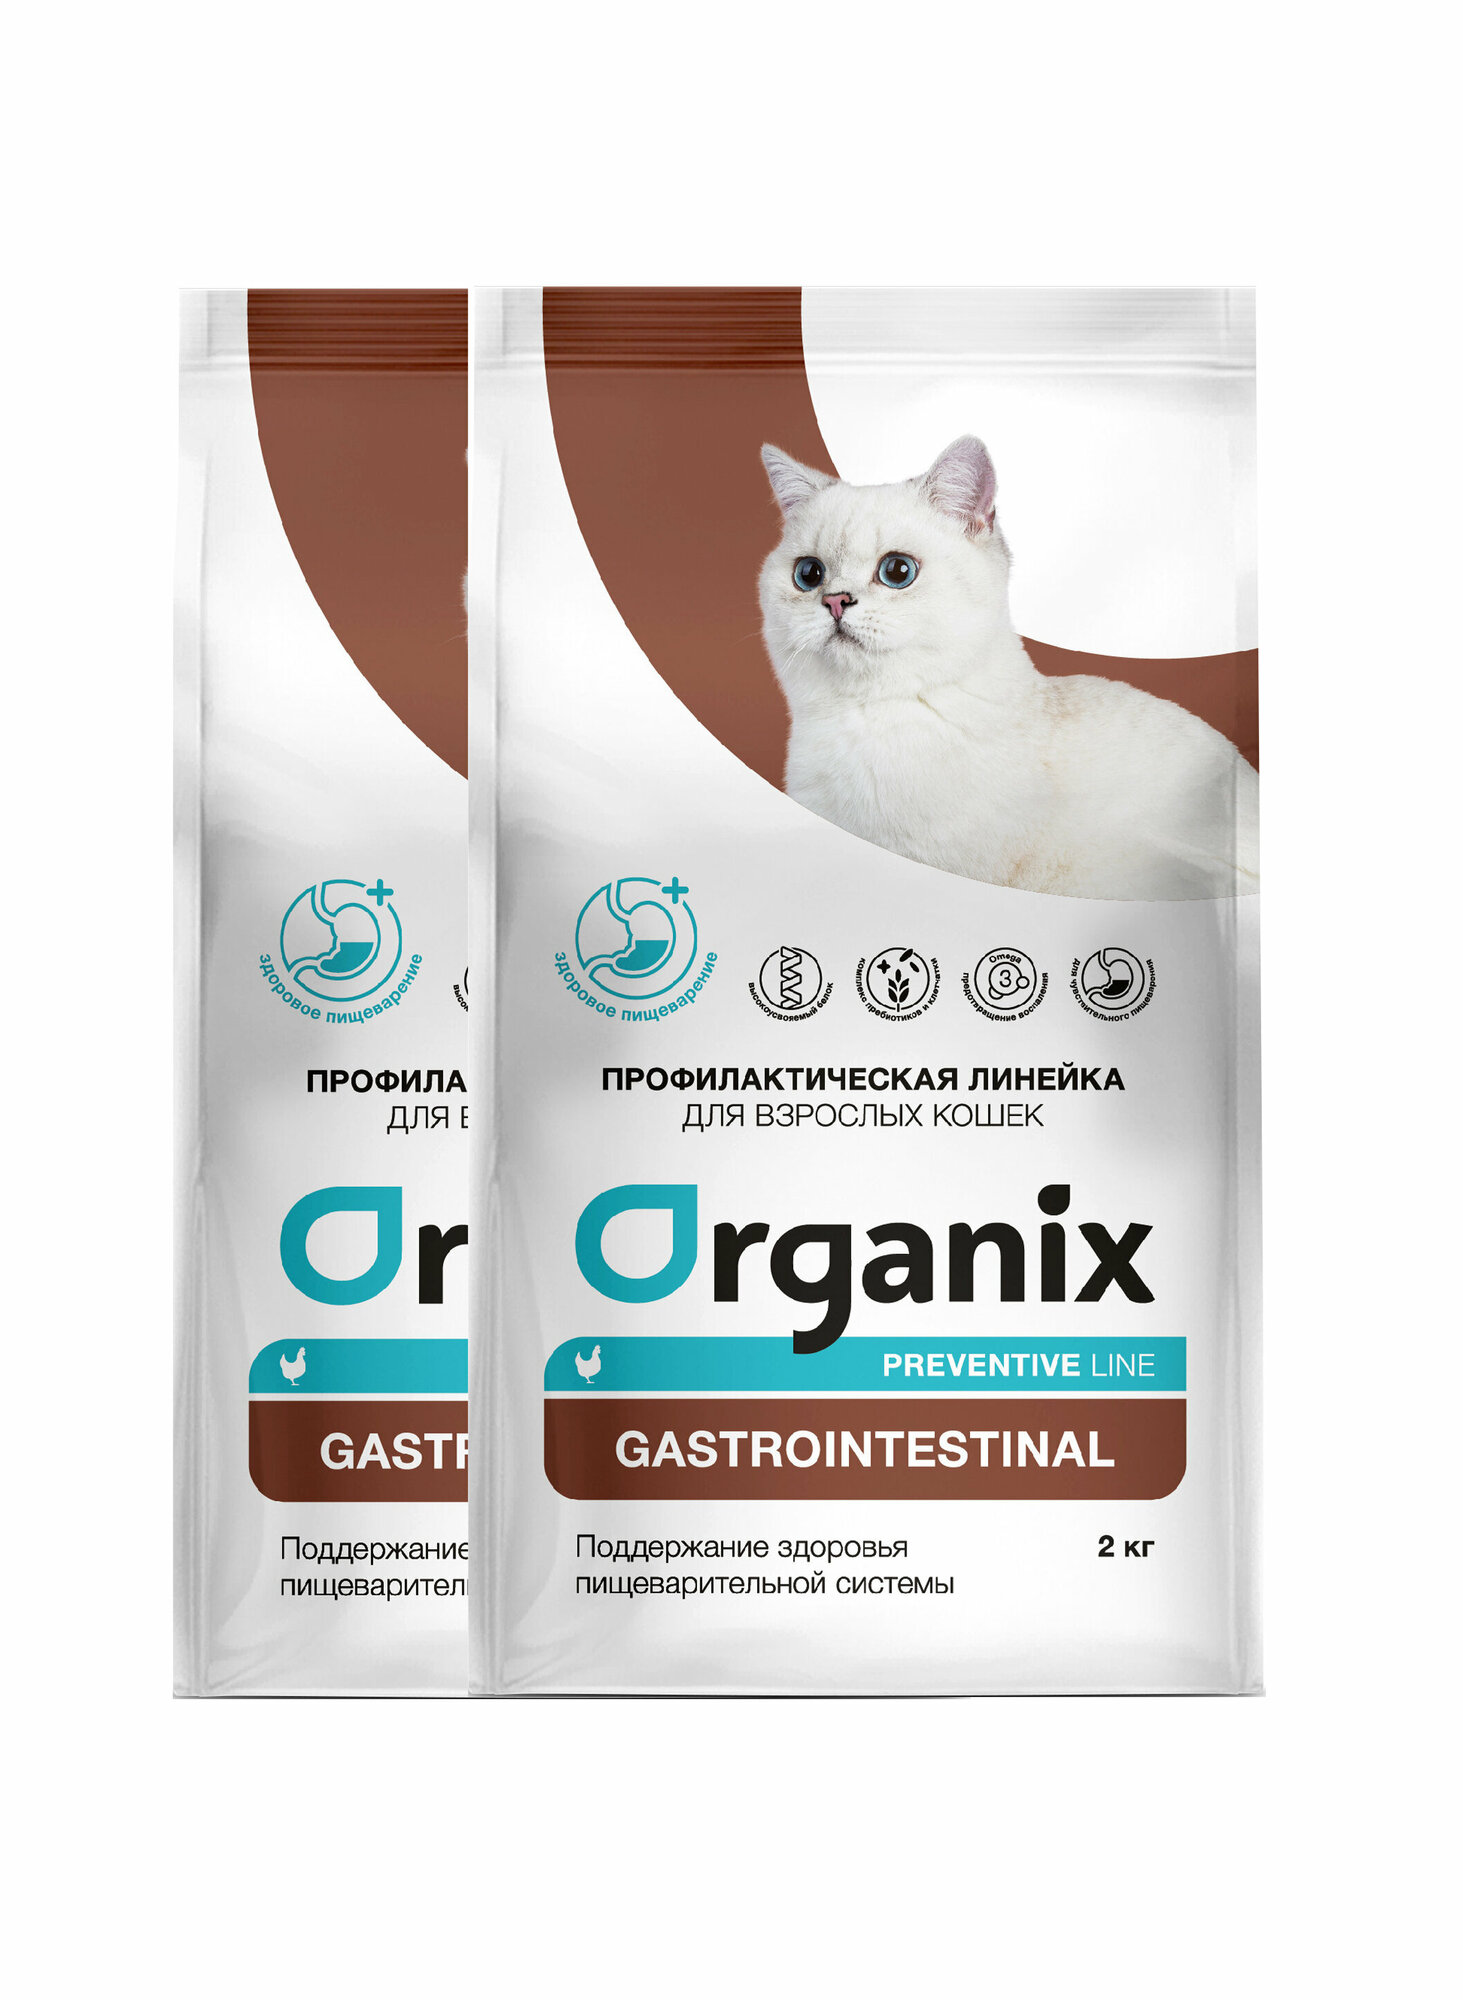 Organix Gastrointestinal сухой корм для кошек "Поддержание здоровья пищеварительной системы" 2 кг х 2шт.